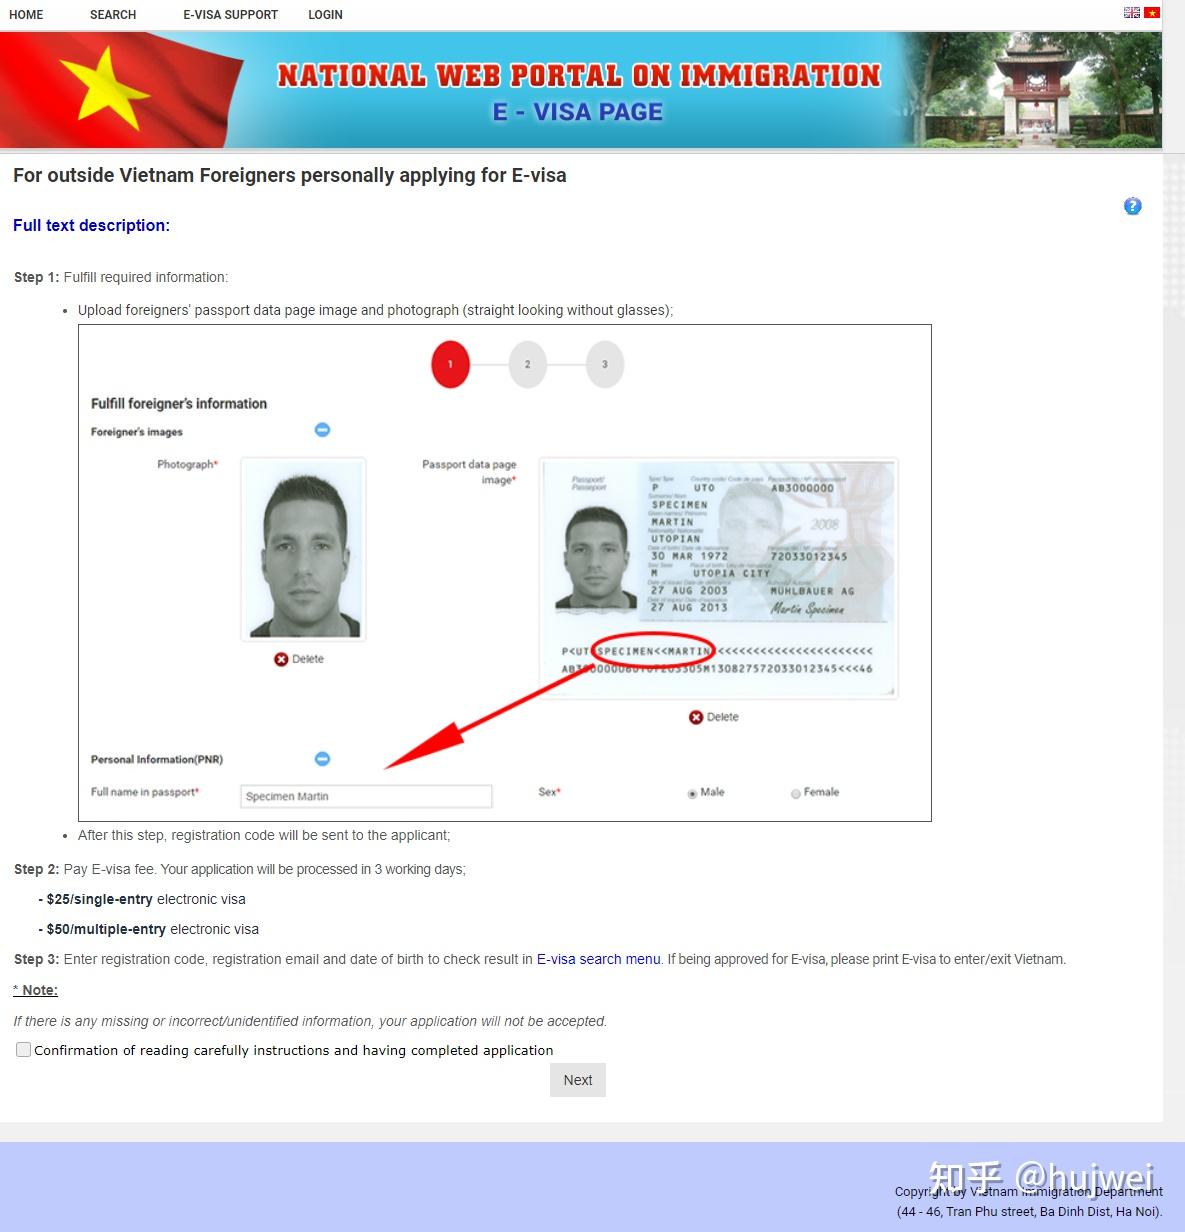 木质背景副本空间的越南护照 库存照片. 图片 包括有 看板卡, 护照, 国界的, 墨水, 国家, 查出 - 253366698